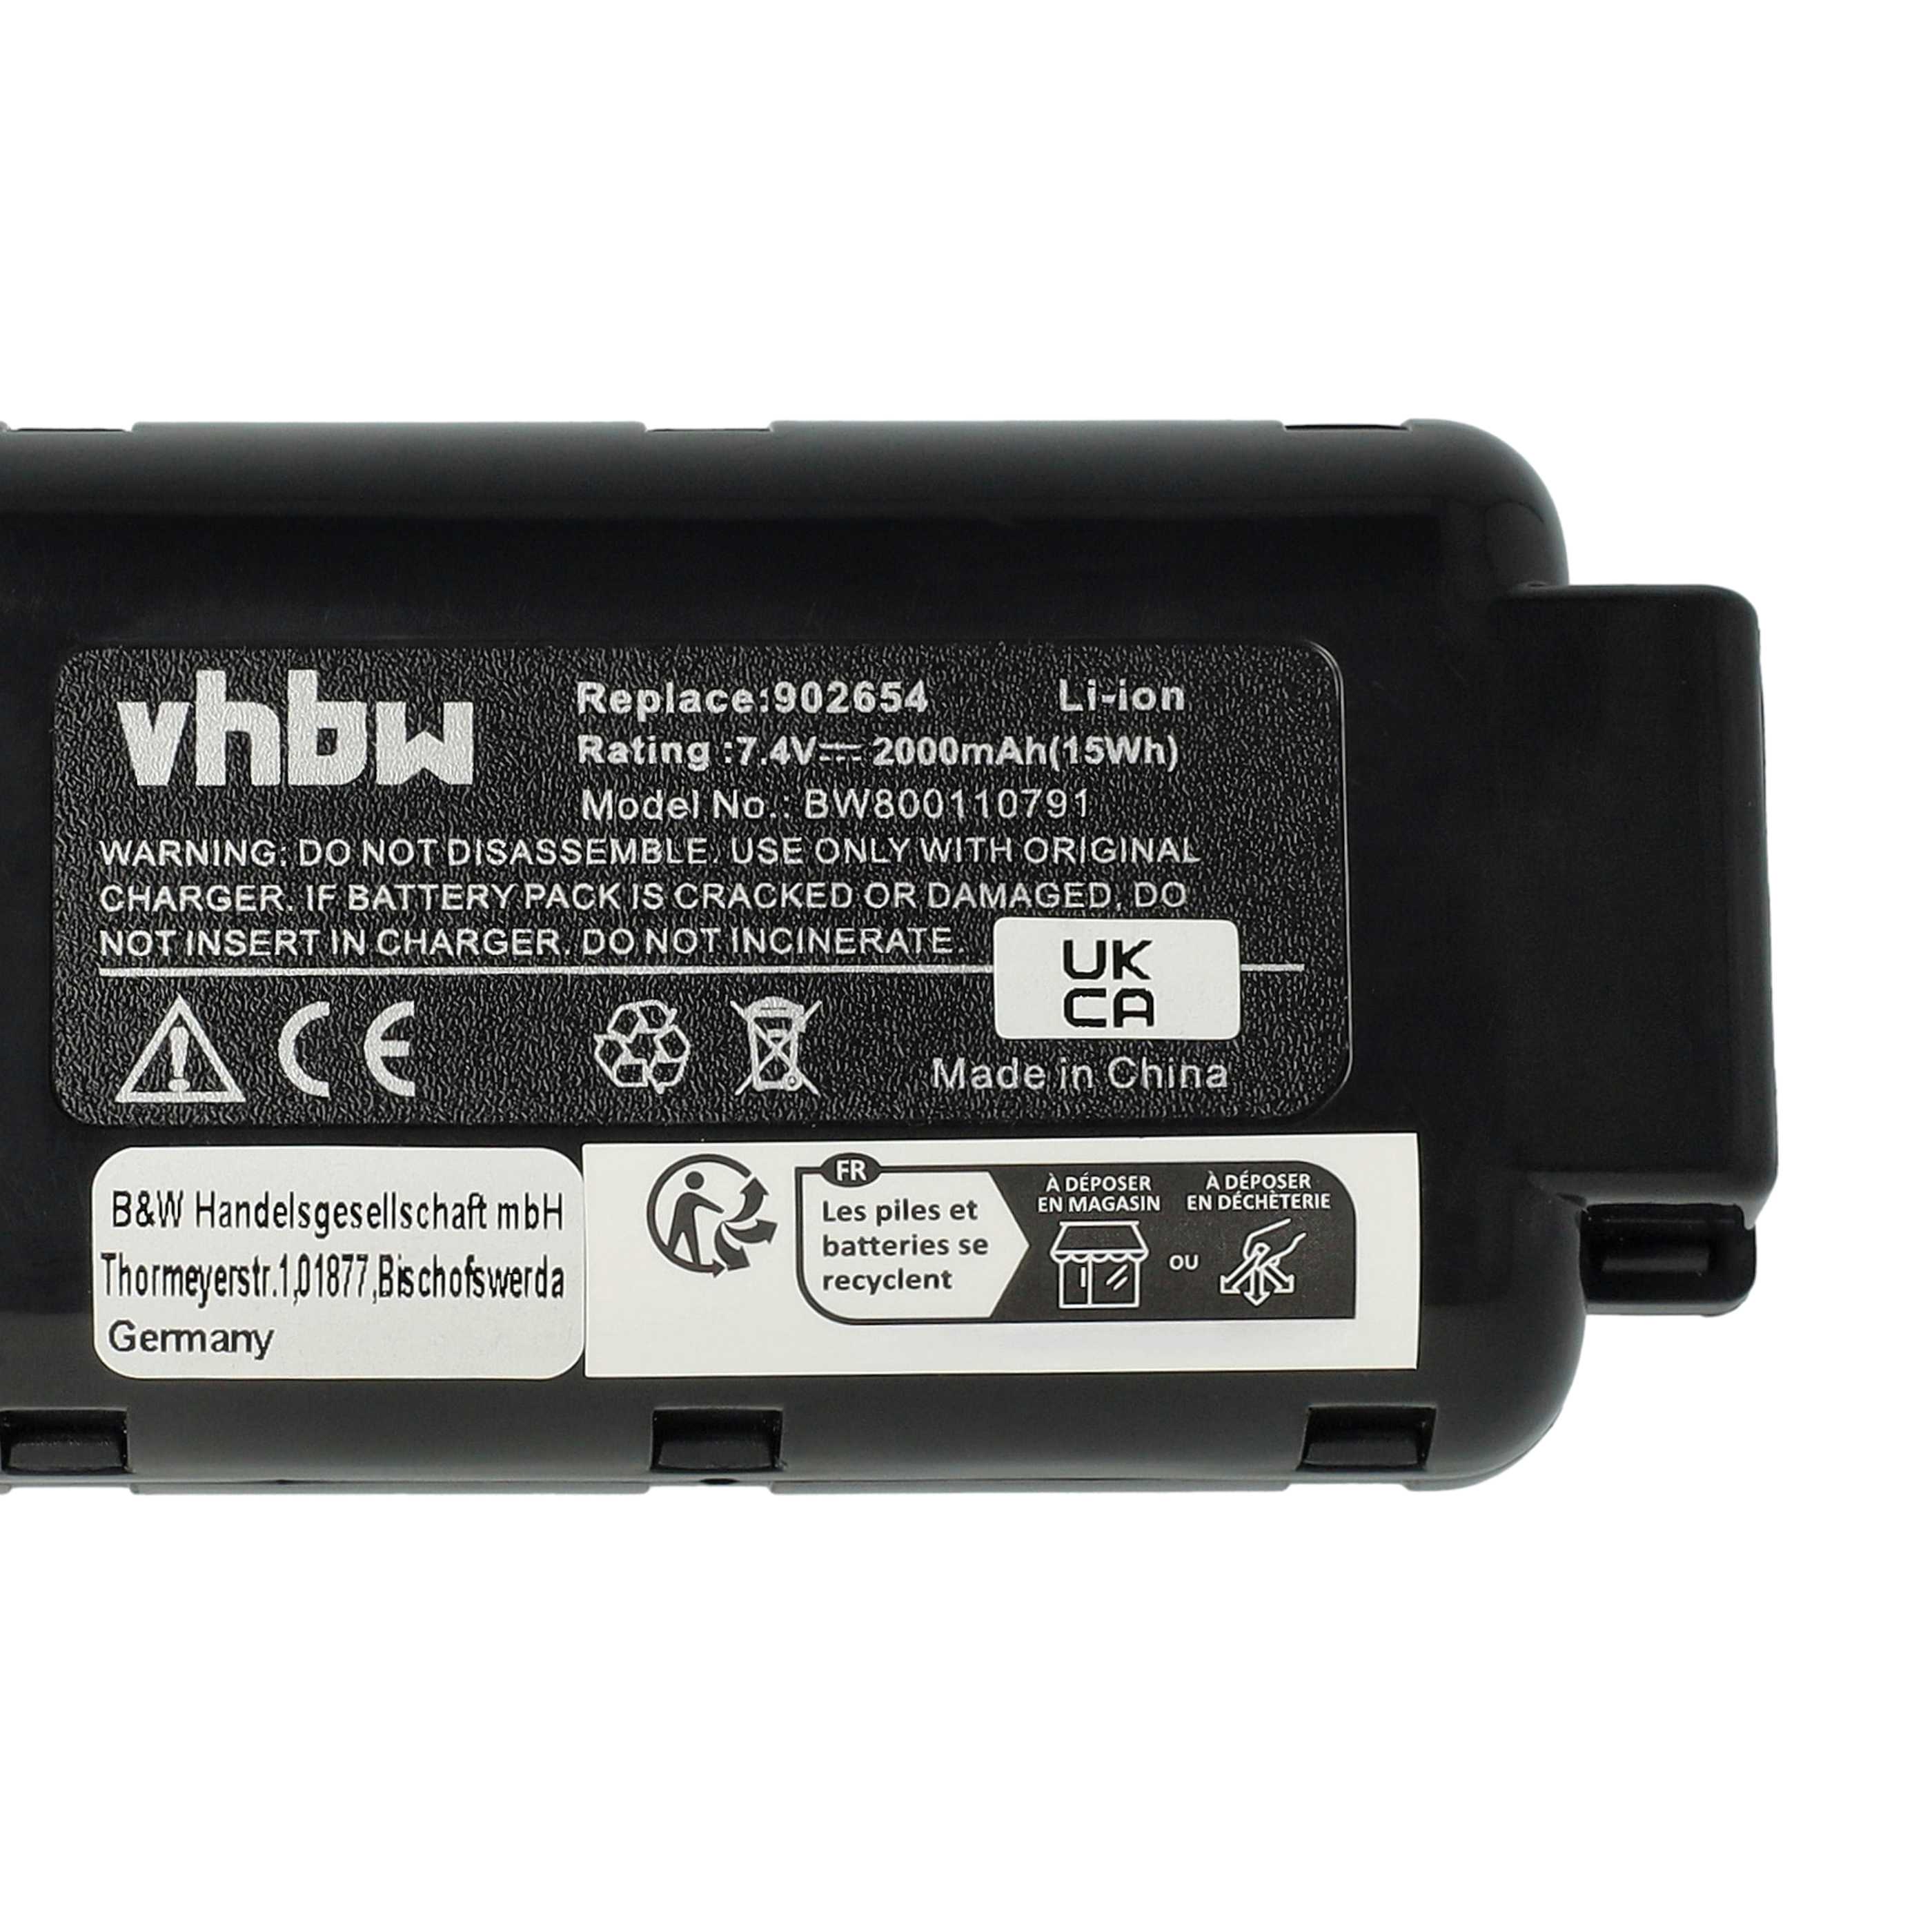 Batterie remplace Paslode 902400, 018880, 404400, 404717 pour outil électrique - 2000 mAh, 7,4 V, Li-ion